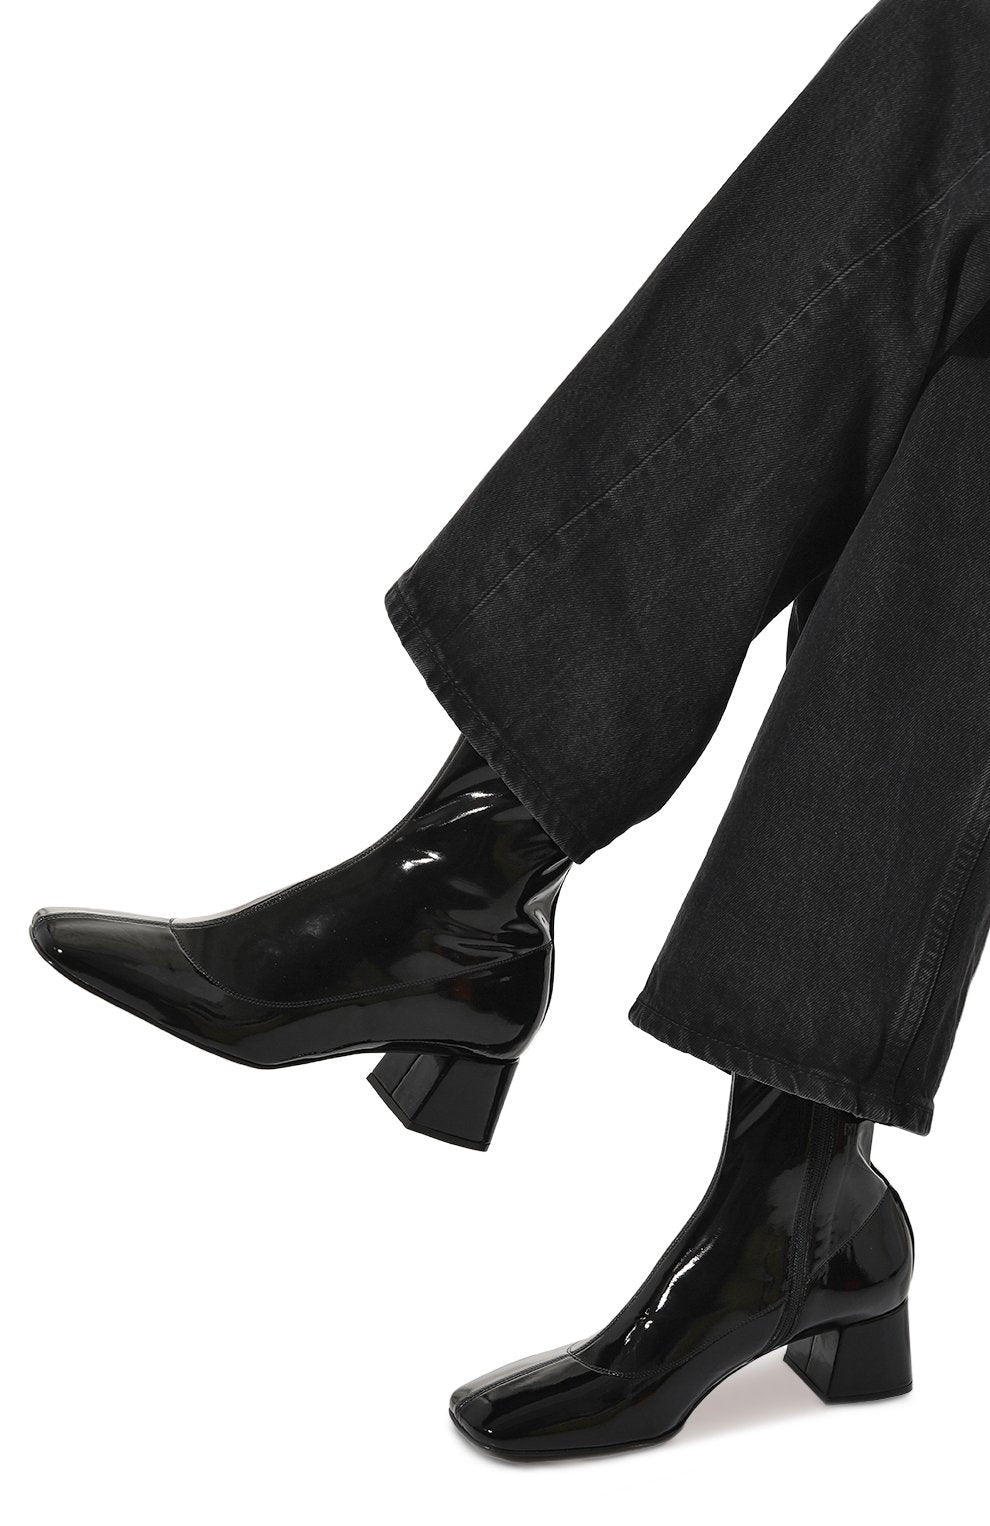 Sr Alicia Patent Black Boots - SERGIO ROSSI - Liberty Shoes Australia